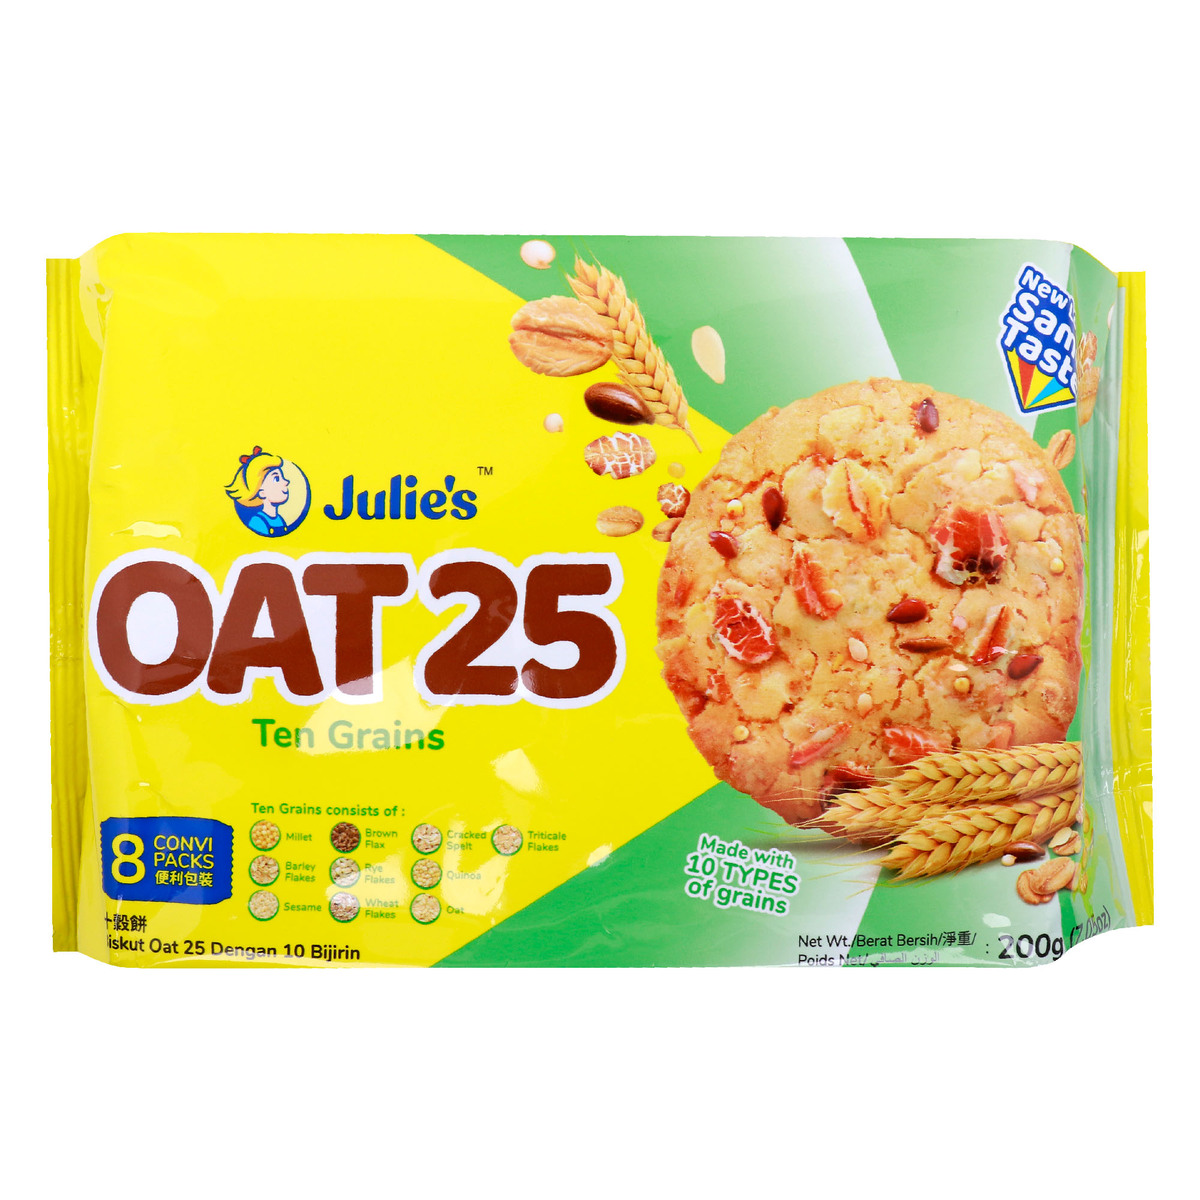 Julies Oat 25 Ten Grains Biscuits 200 g Online at Best Price | Fiber ...